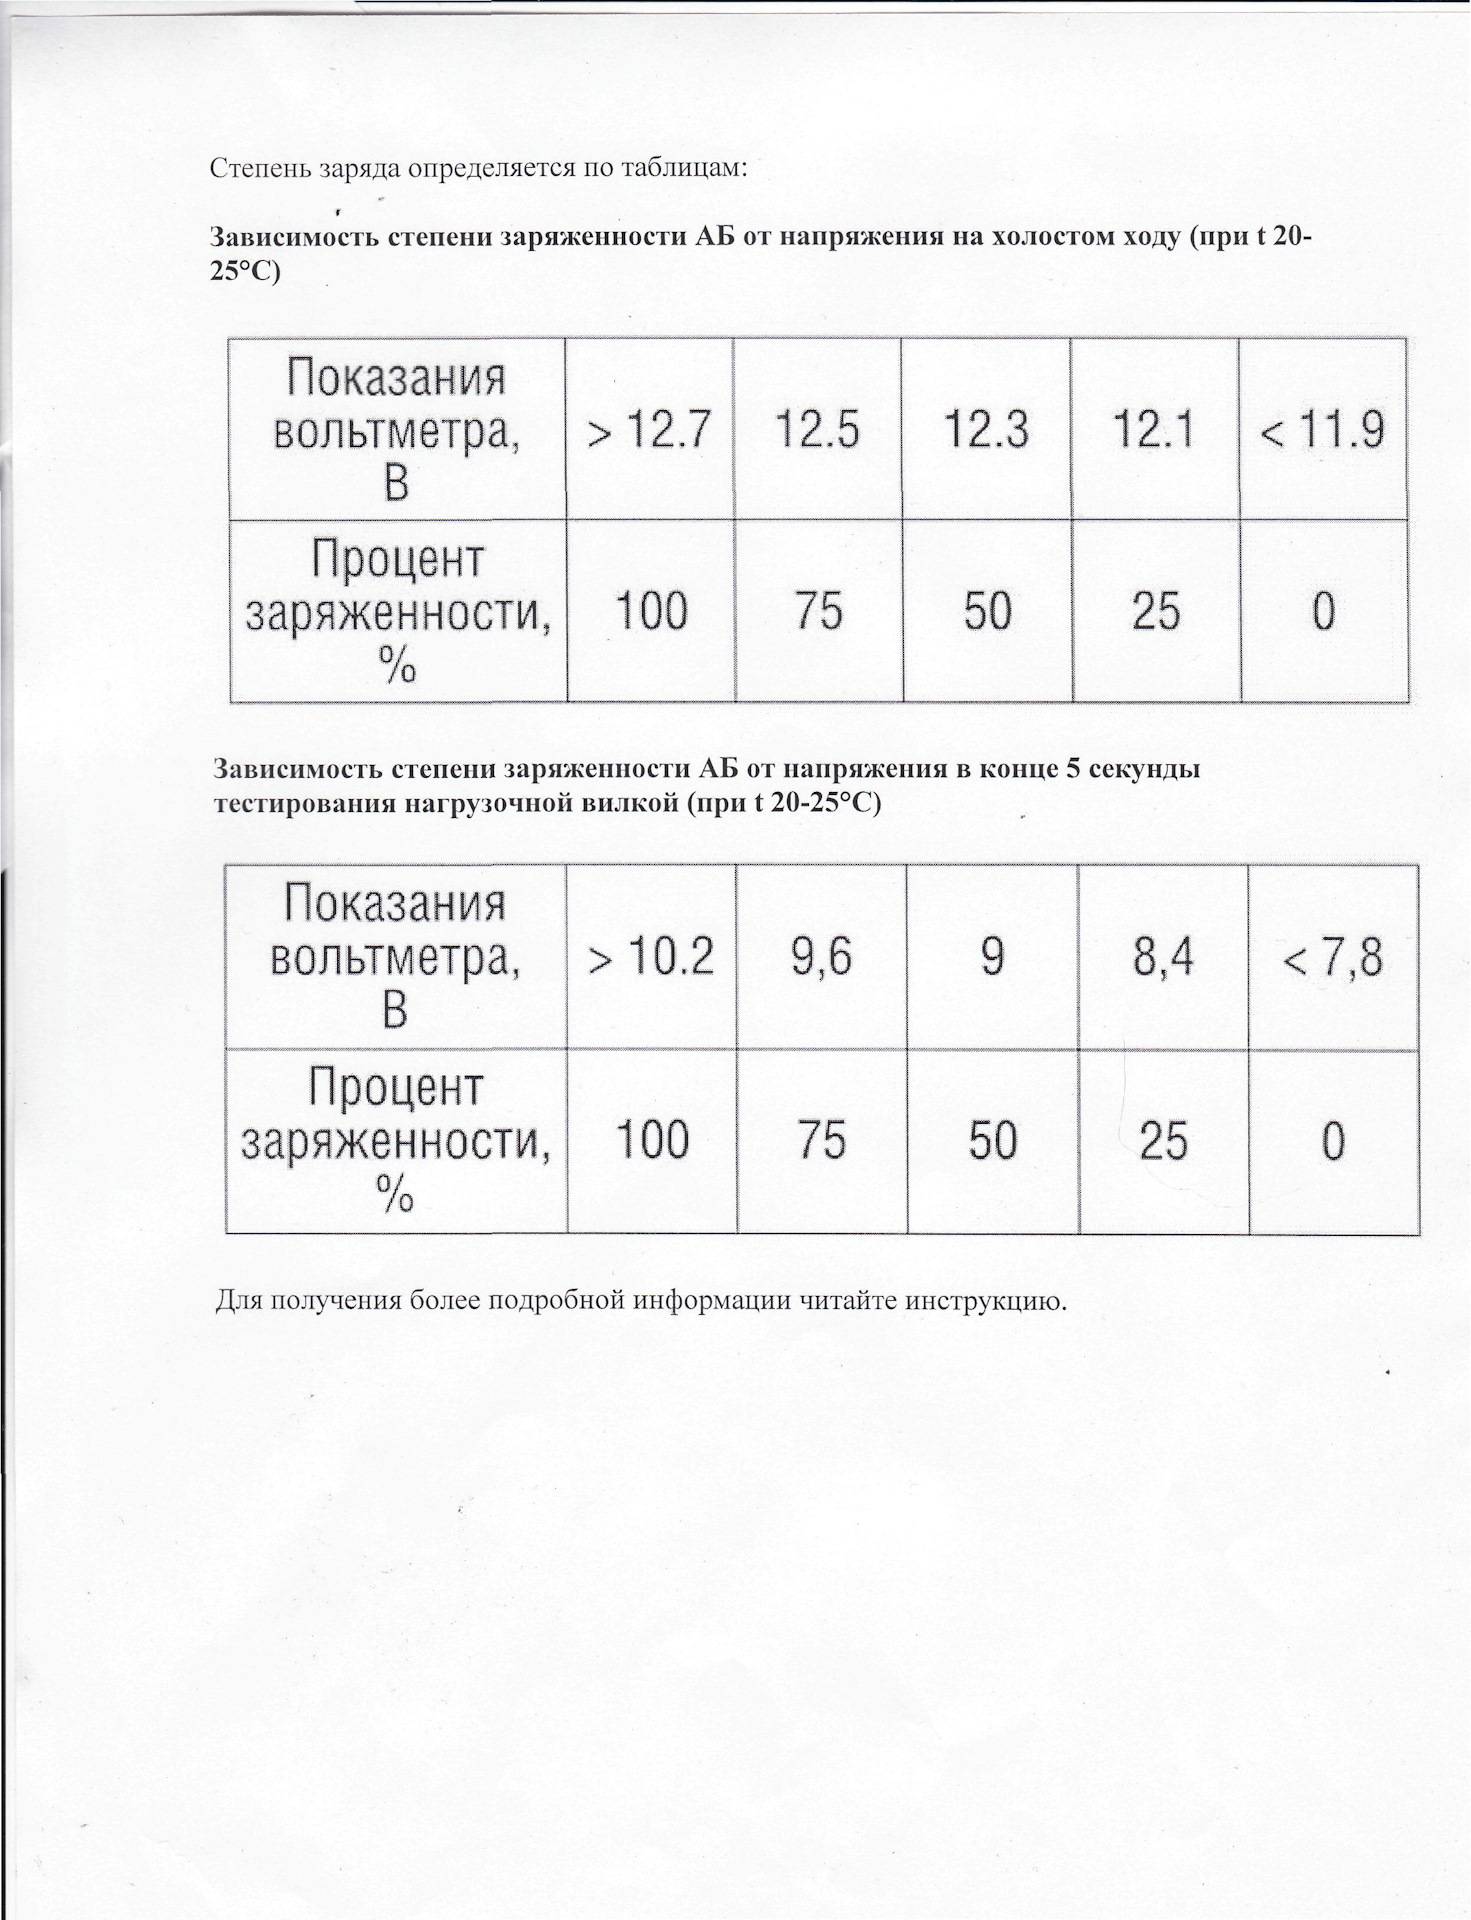 Рекомендации как пользоваться нагрузочной вилкой для аккумулятора | auto-gl.ru